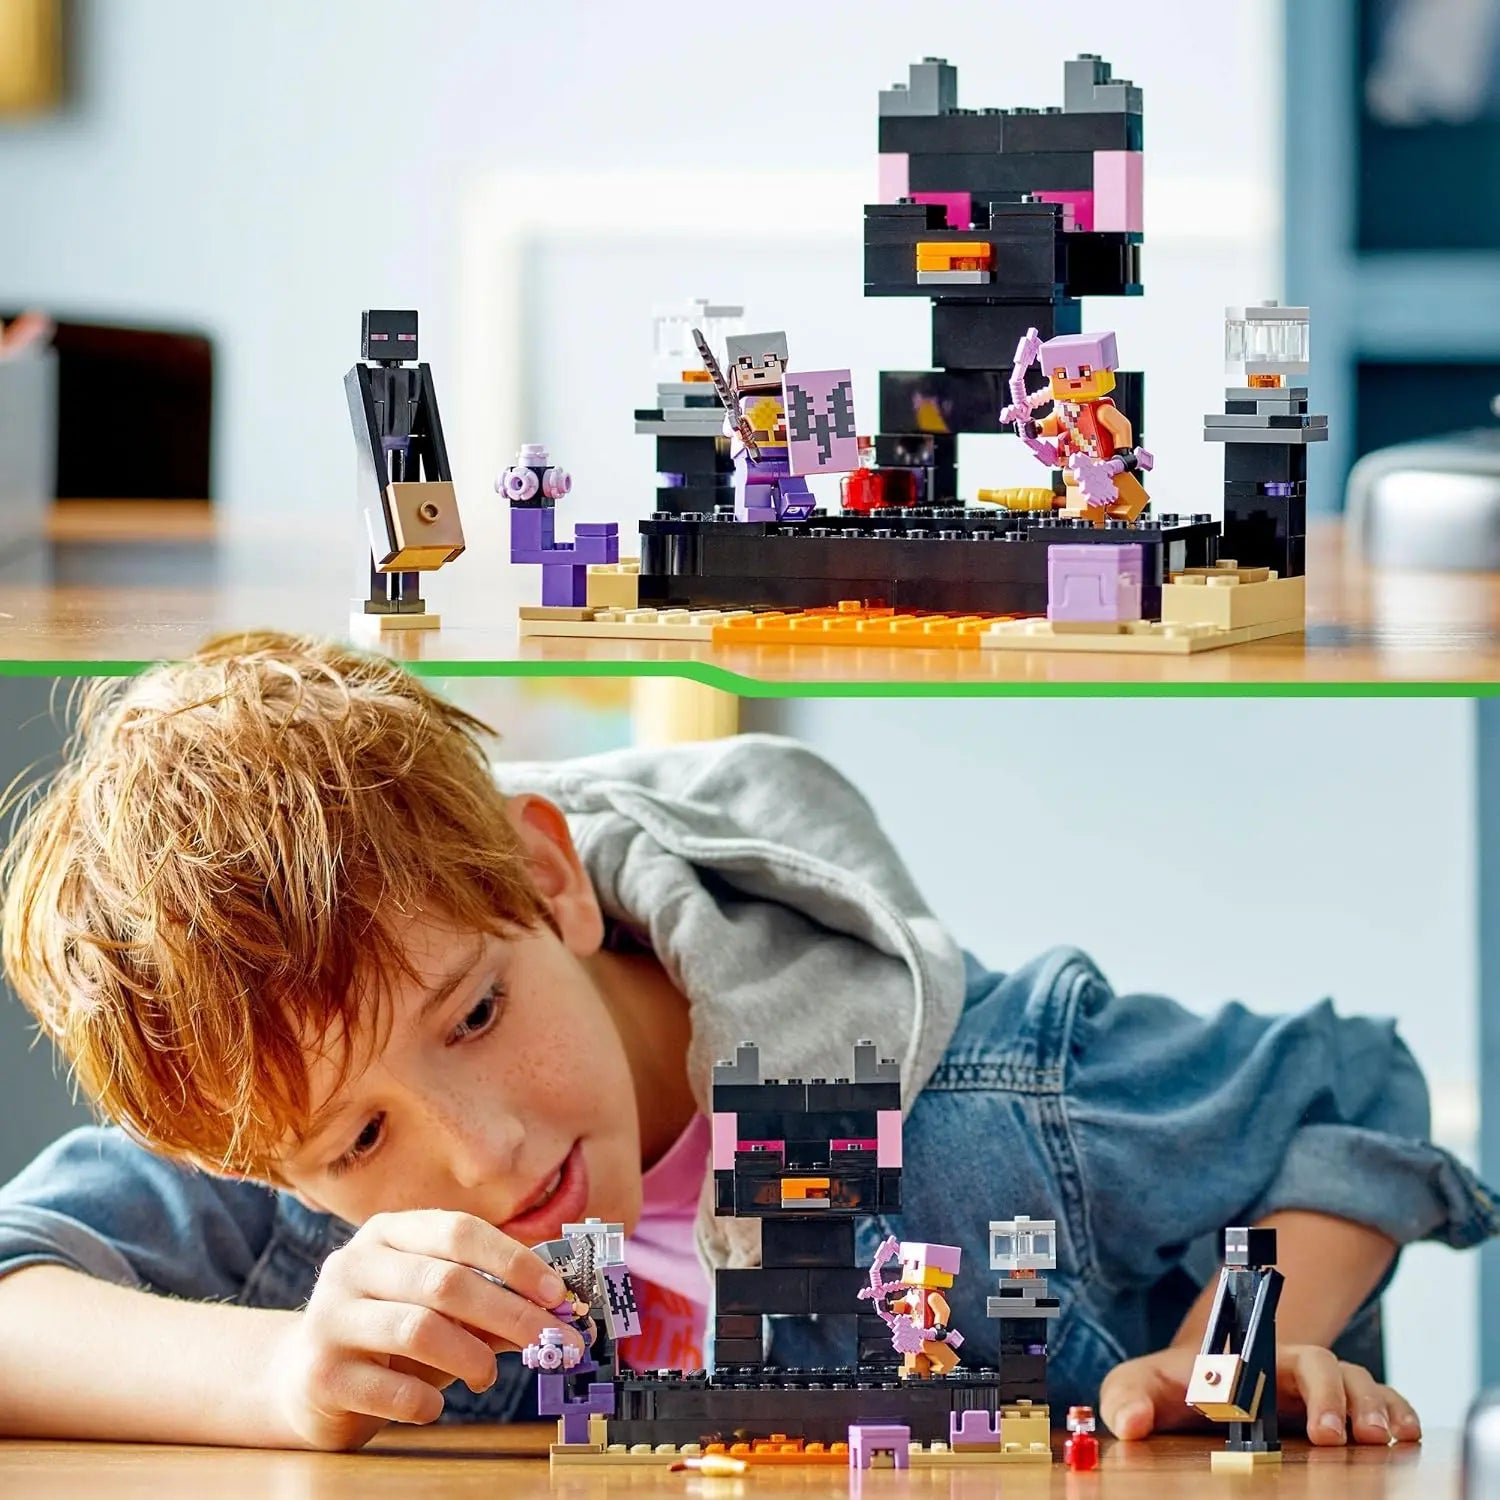 jouet pour enfant Copie de LEGO La gare21242 LEGO Minecraft lego